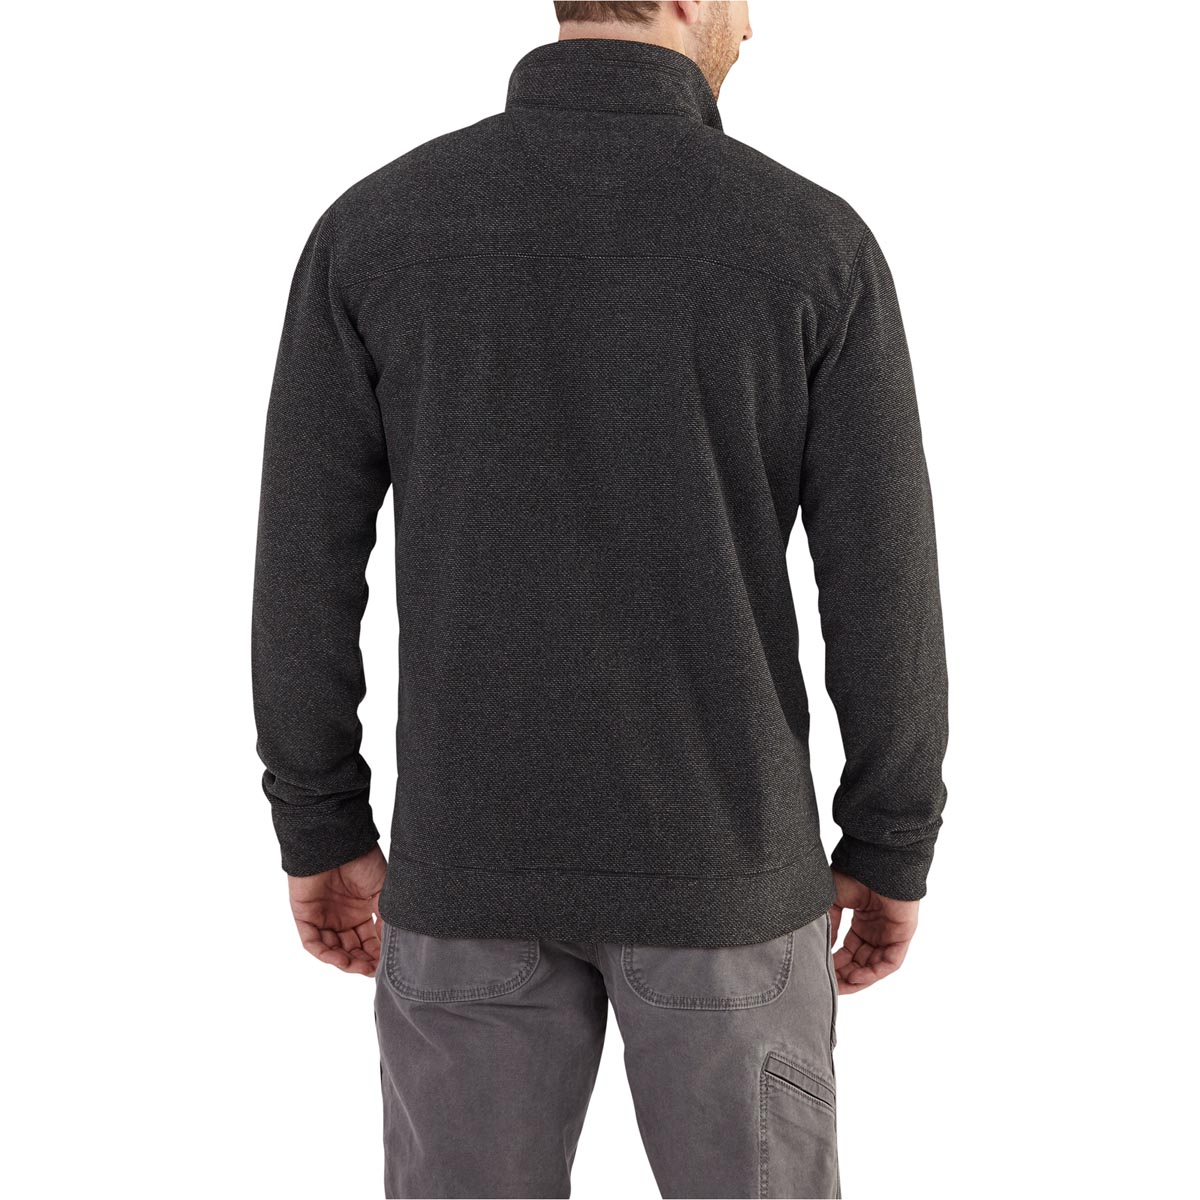 Carhartt Men's Walden Full Zip Sweater Fleece